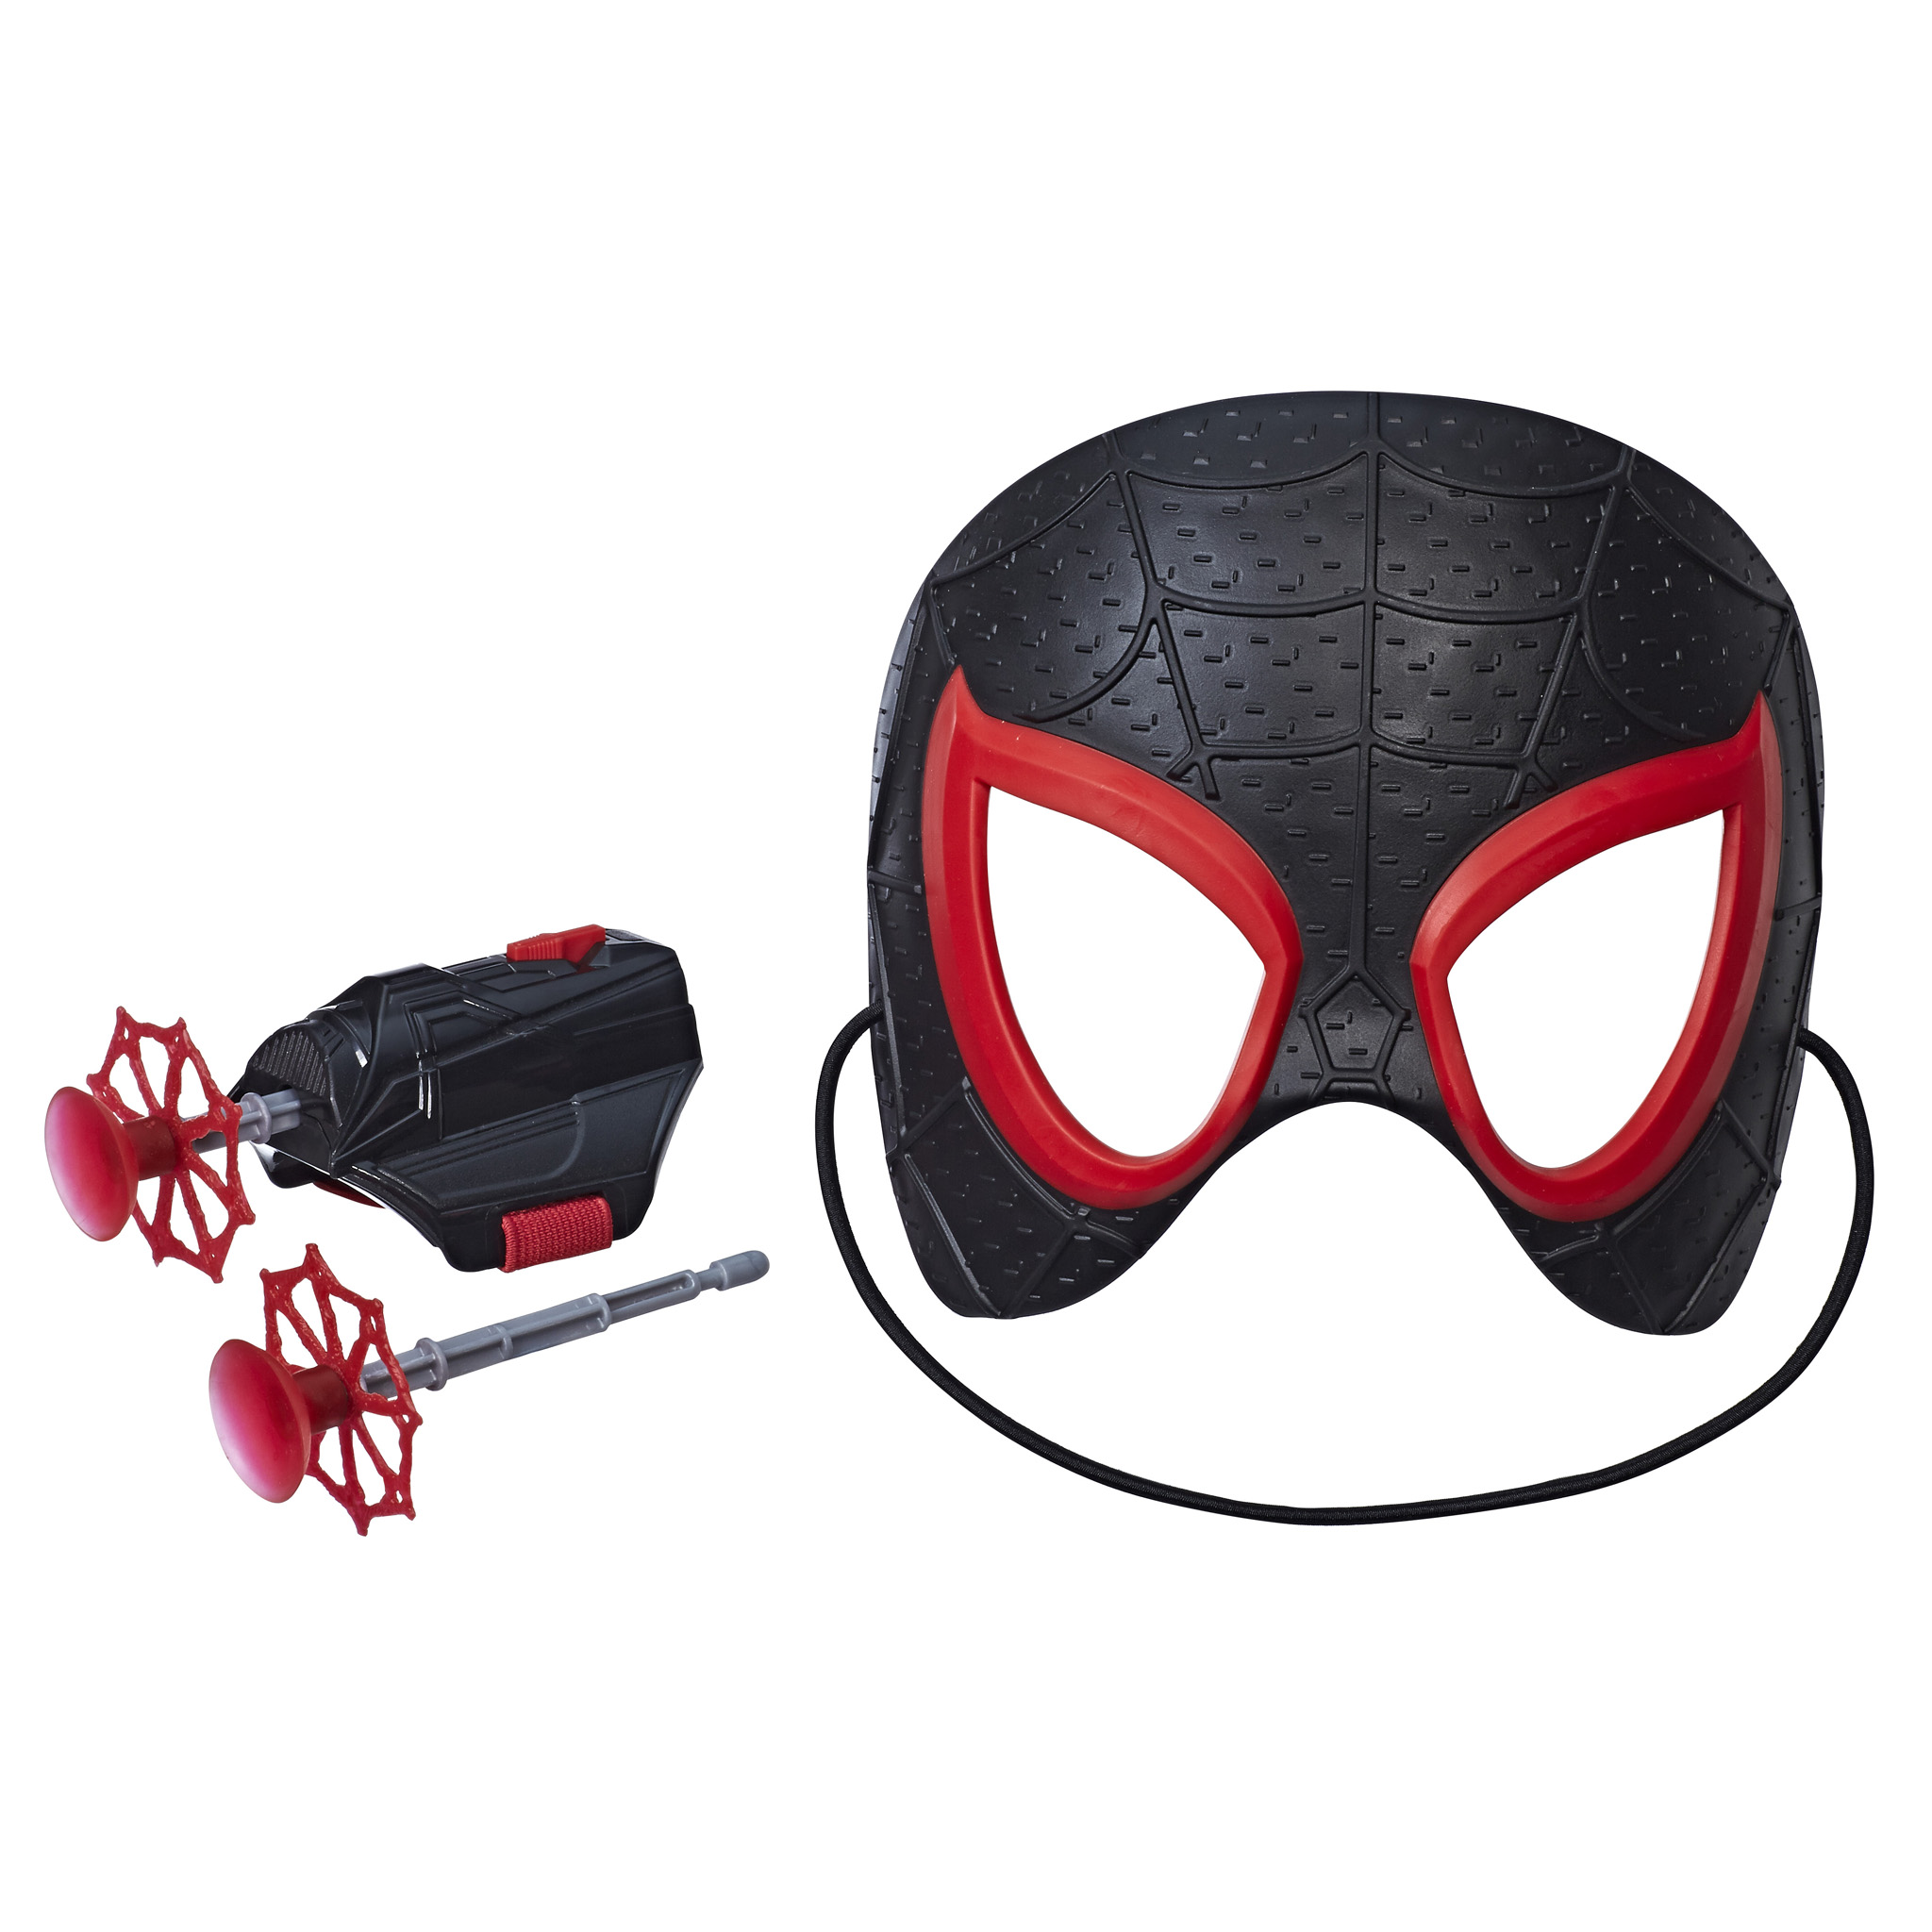 Hasbro Reveals MORE Spider-Man: Into The Spider-Verse Toys – DisKingdom.com